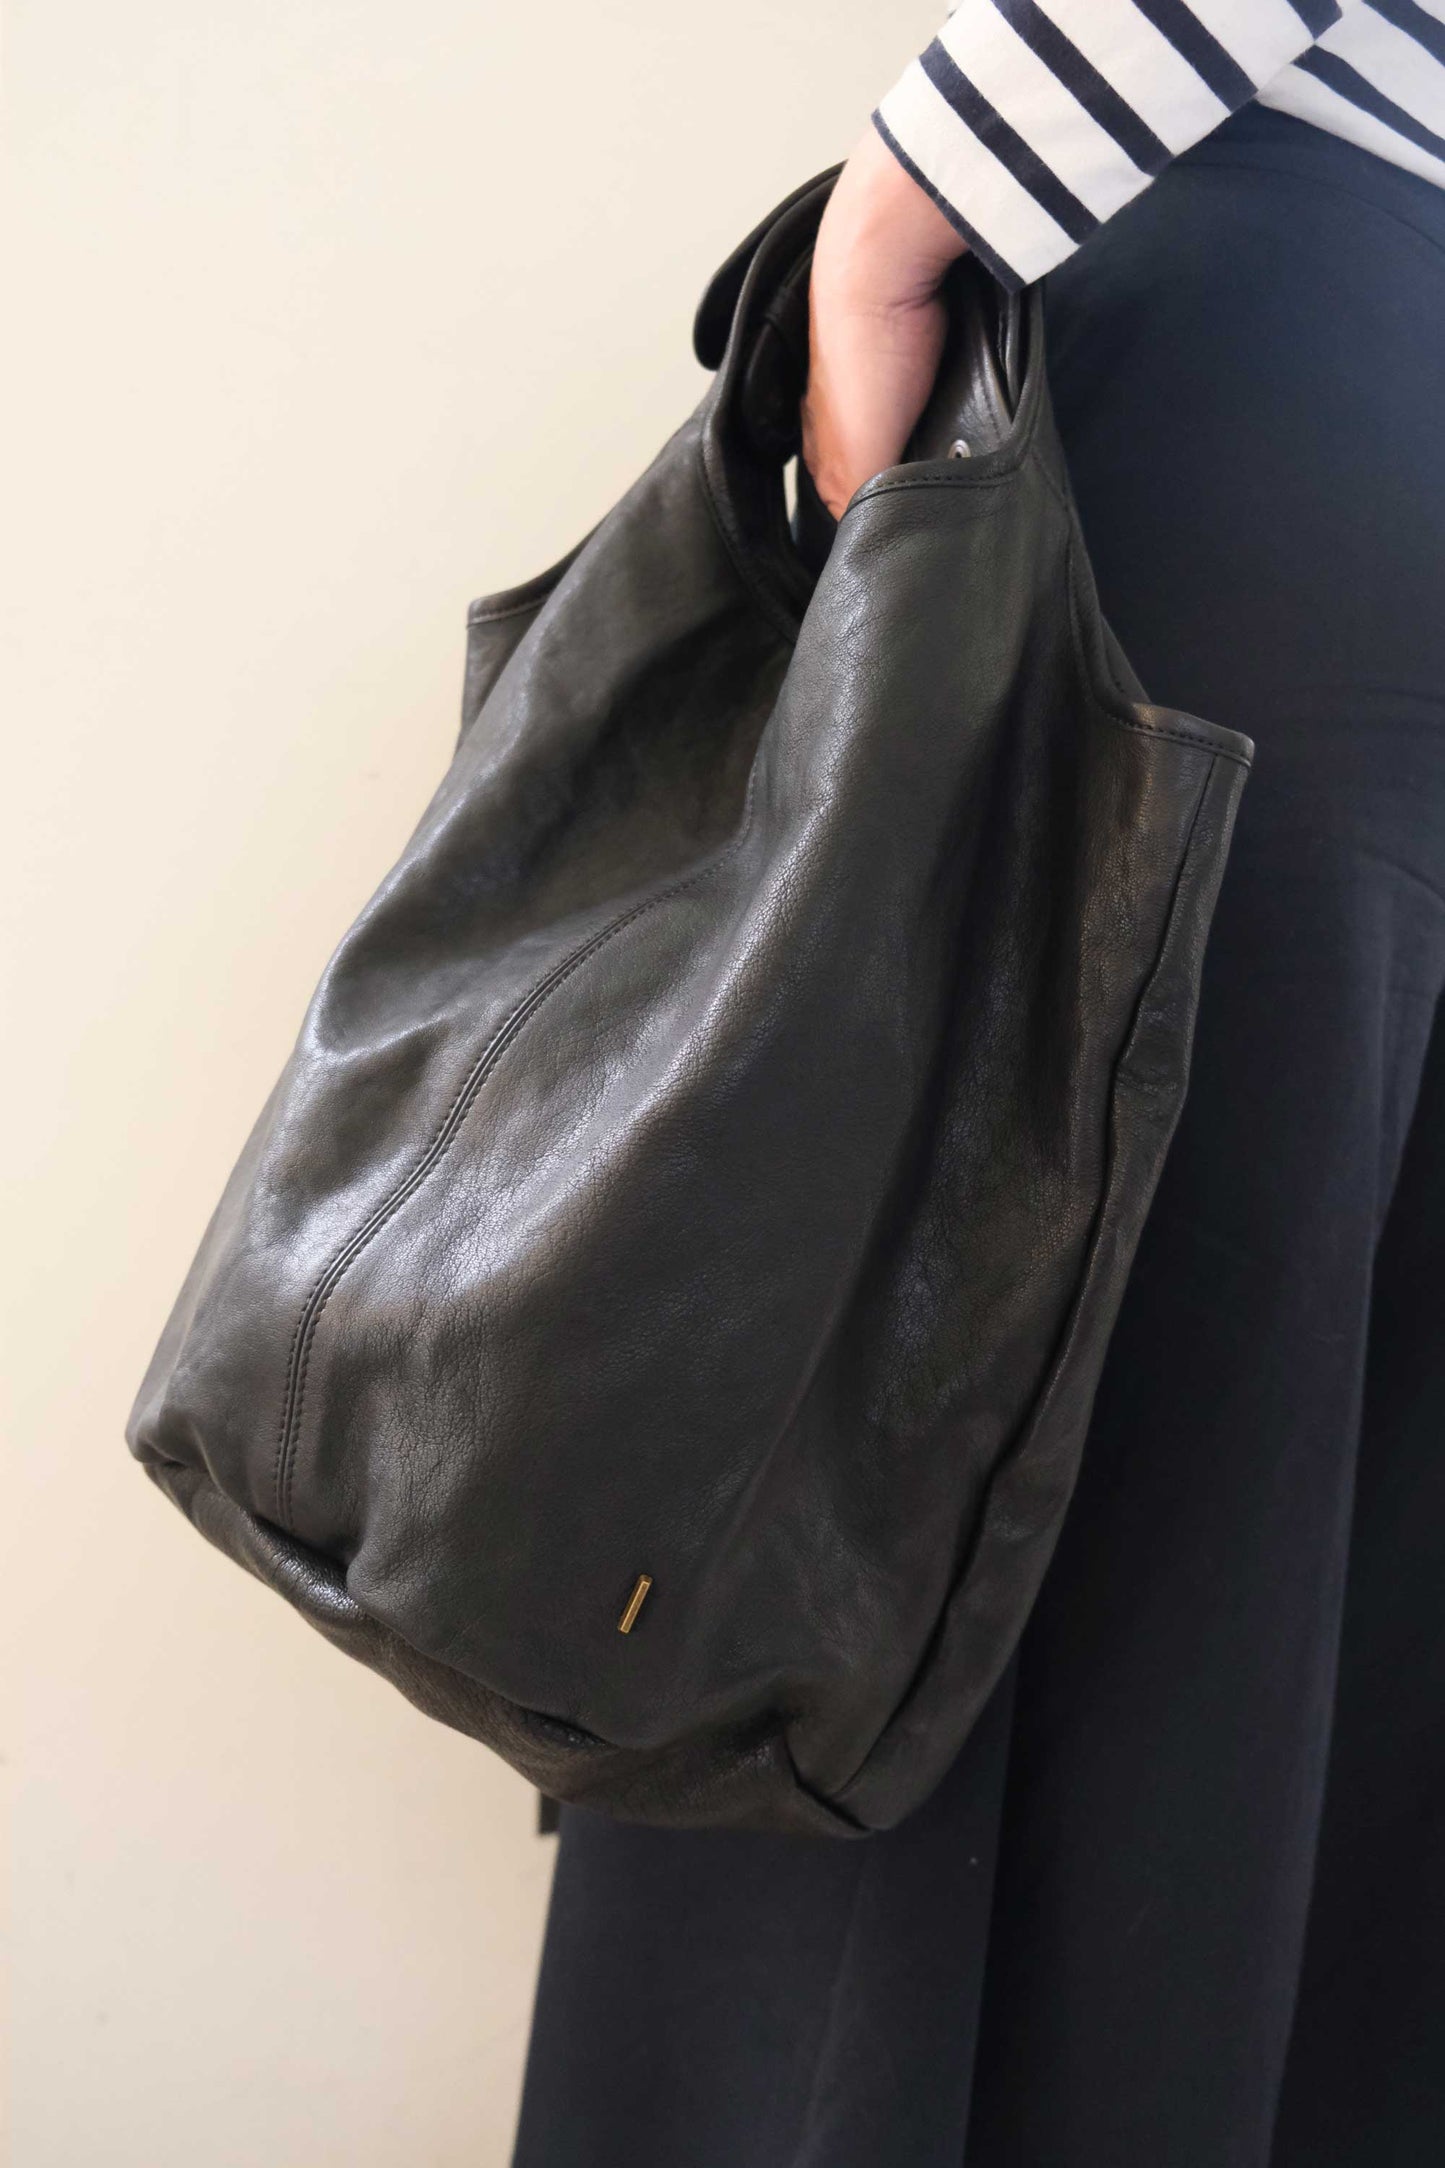 Lena tote bag in black nappa leather